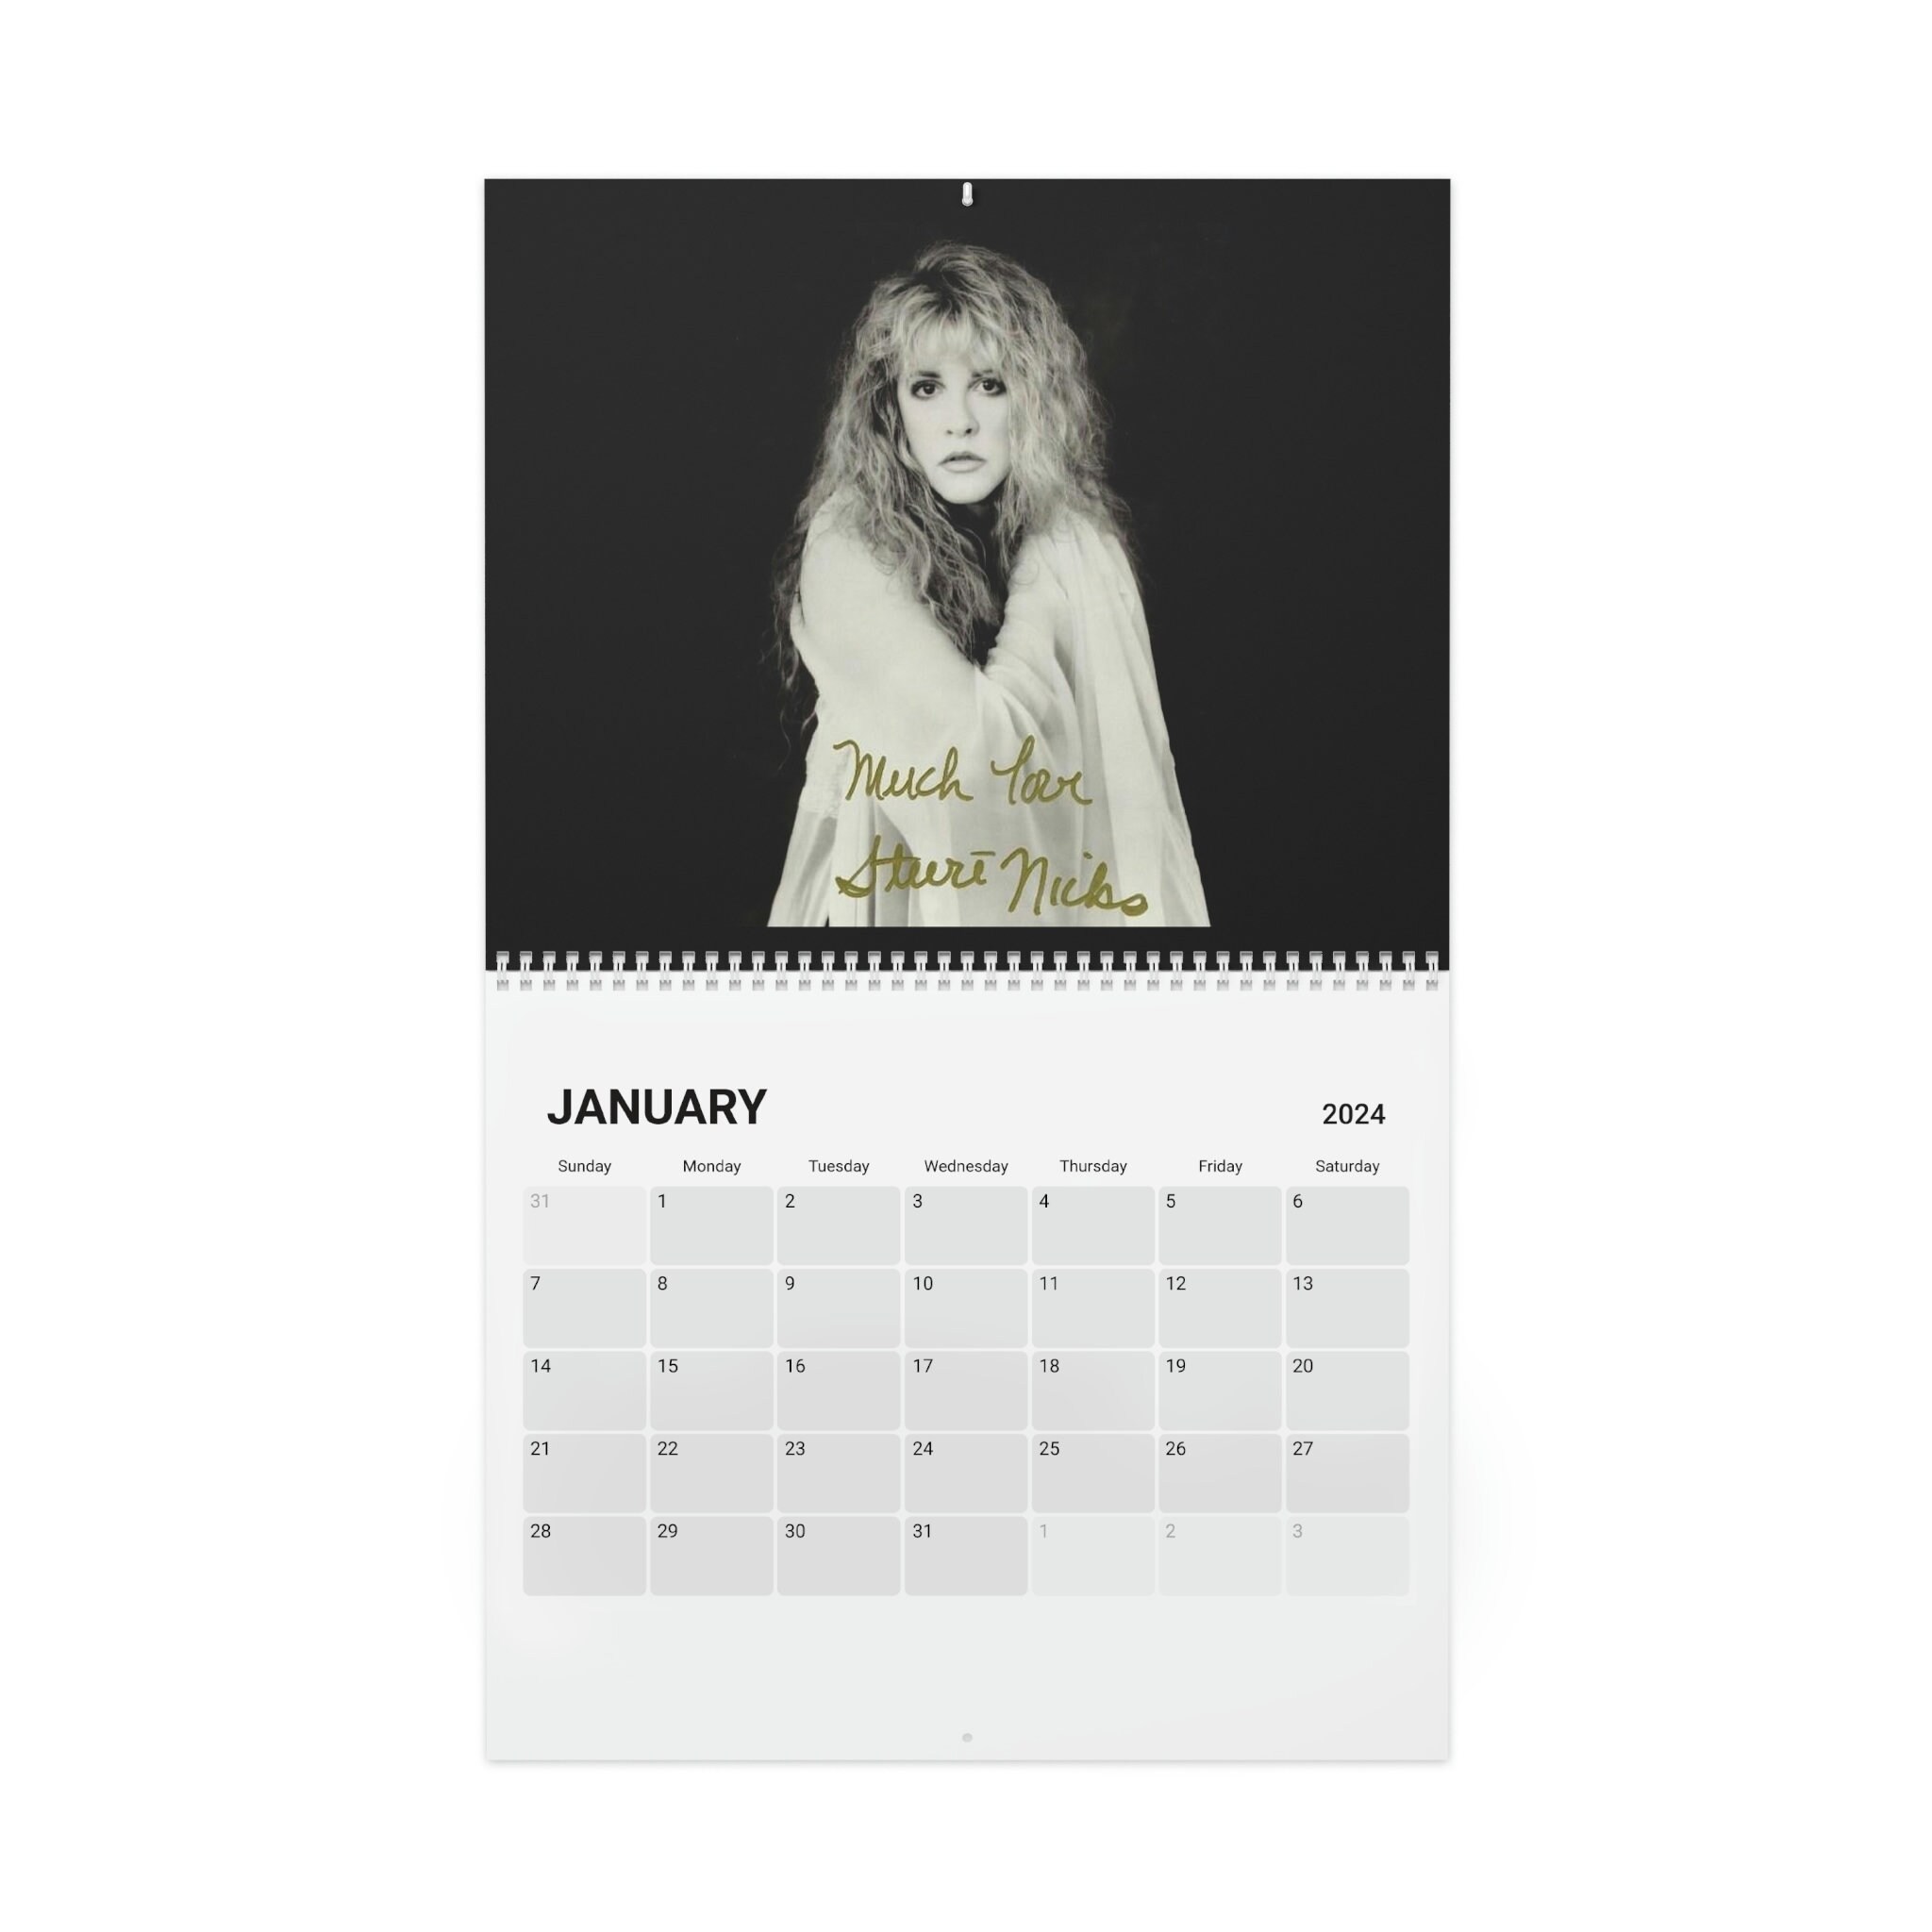 Stevie nicks Calendar (2024), Fleetwood mac calender sold by Fireplace